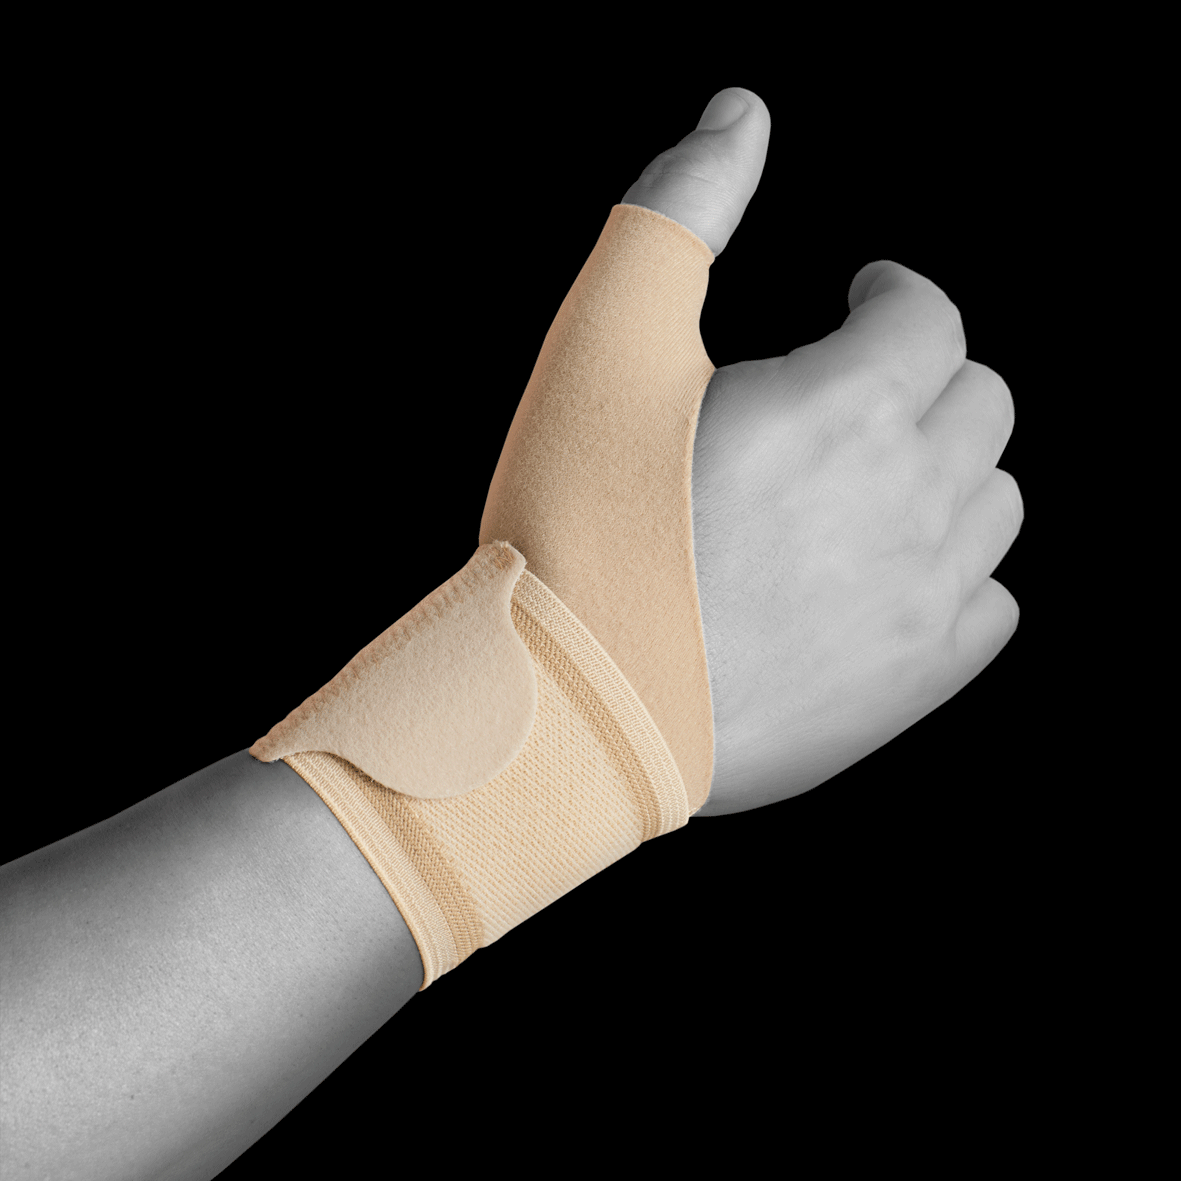 Wrap-around wrist support adjustable